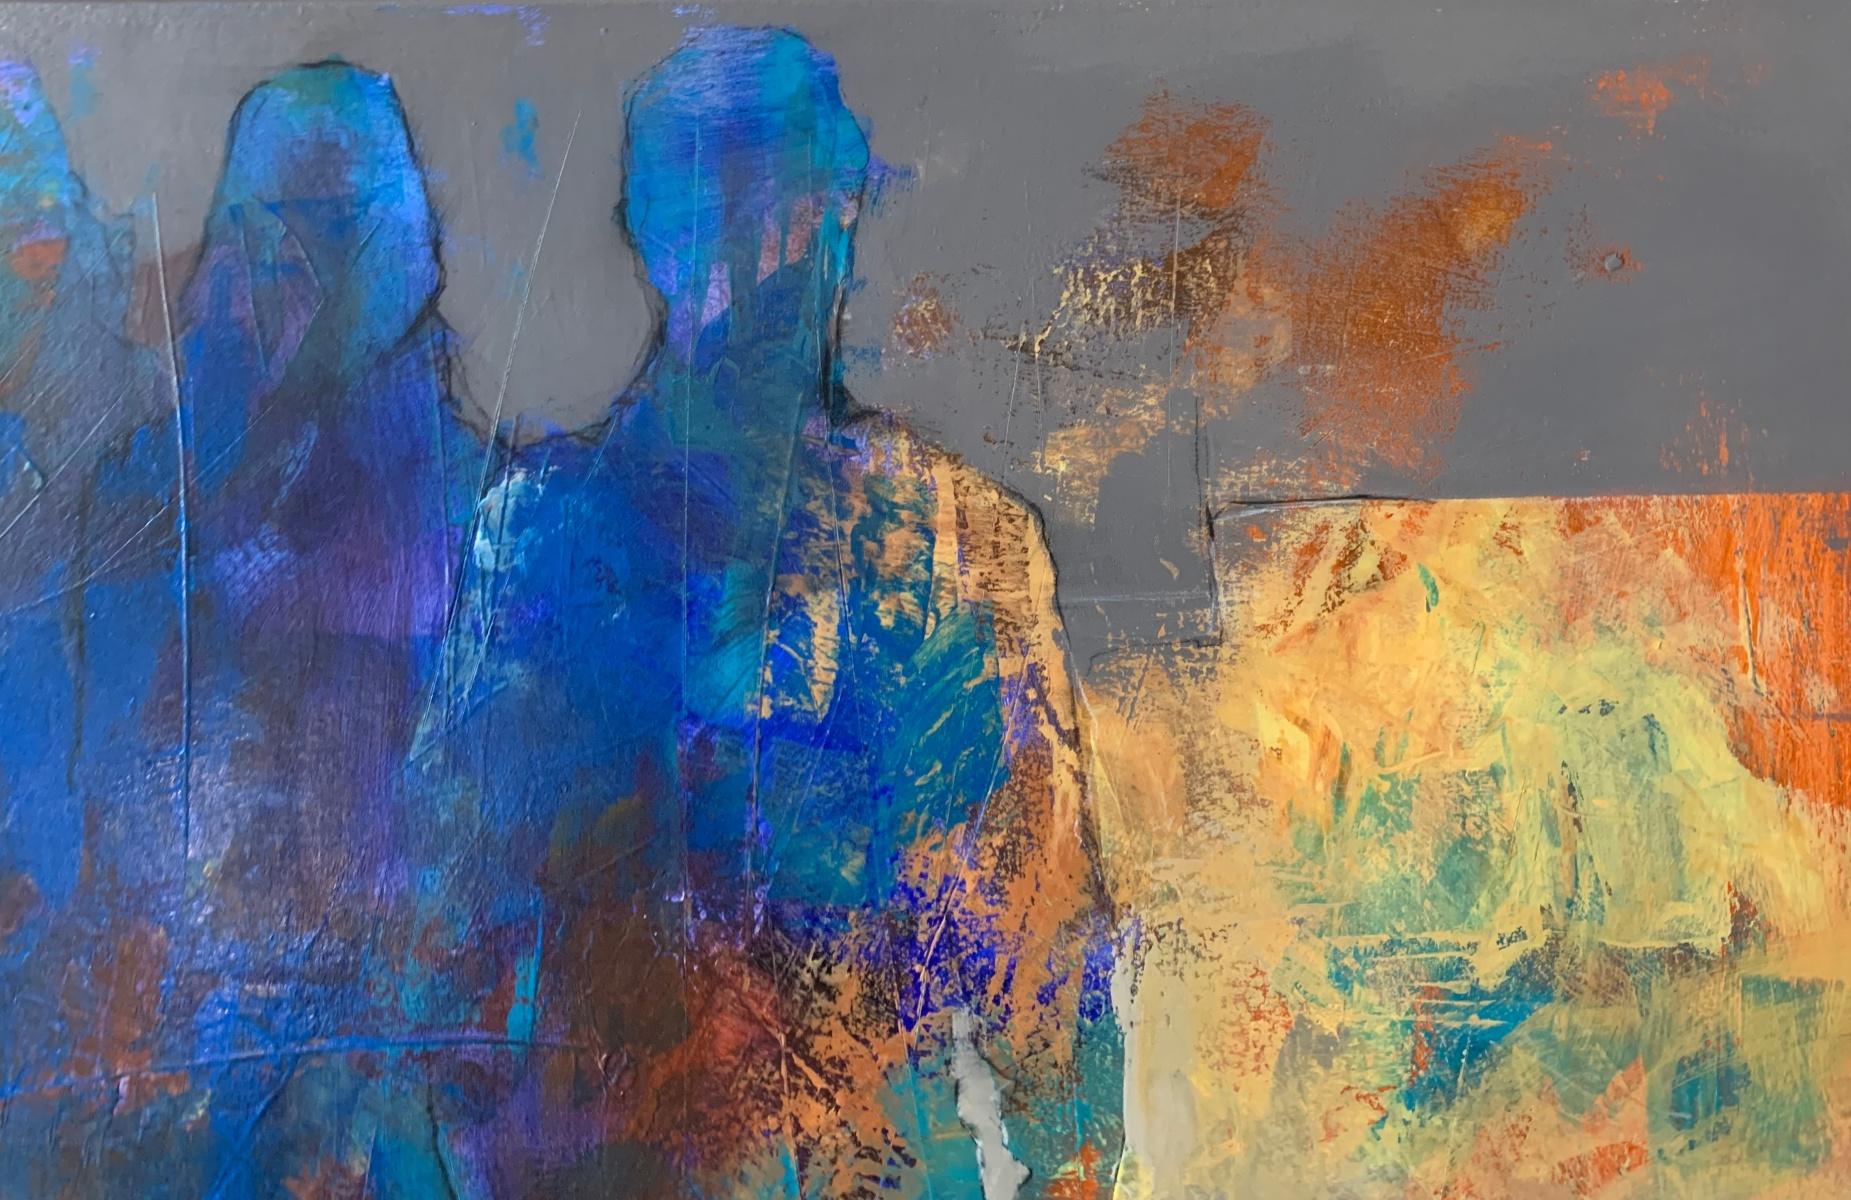 Zeitgenössische Acrylmalerei, die Menschen darstellt, von dem polnischen Künstler Michal Bajsarowicz. Horizontales Gemälde auf Leinwand, der Künstler hat hauptsächlich vier Farben verwendet: grau, orange, blau und gelb. Artistische Darstellung des